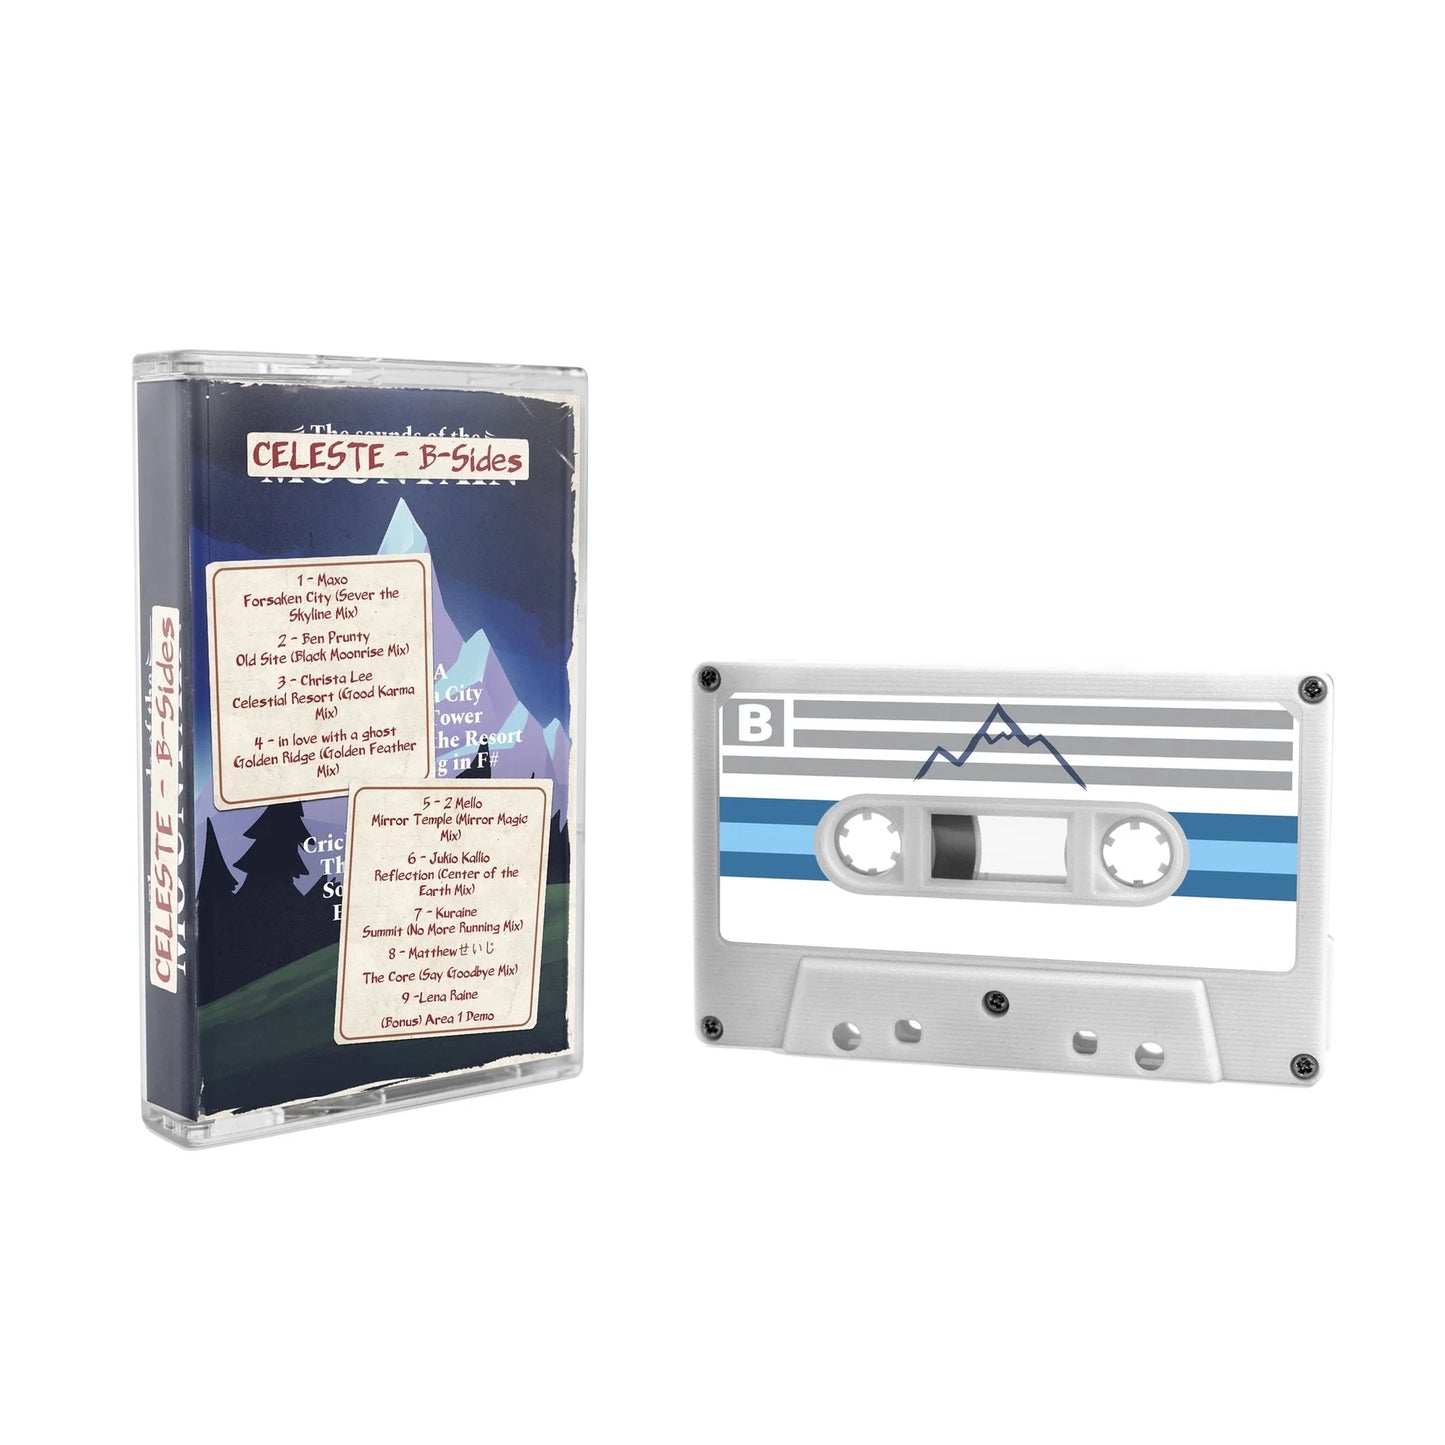 Celeste B-Sides (Cassette Tape)